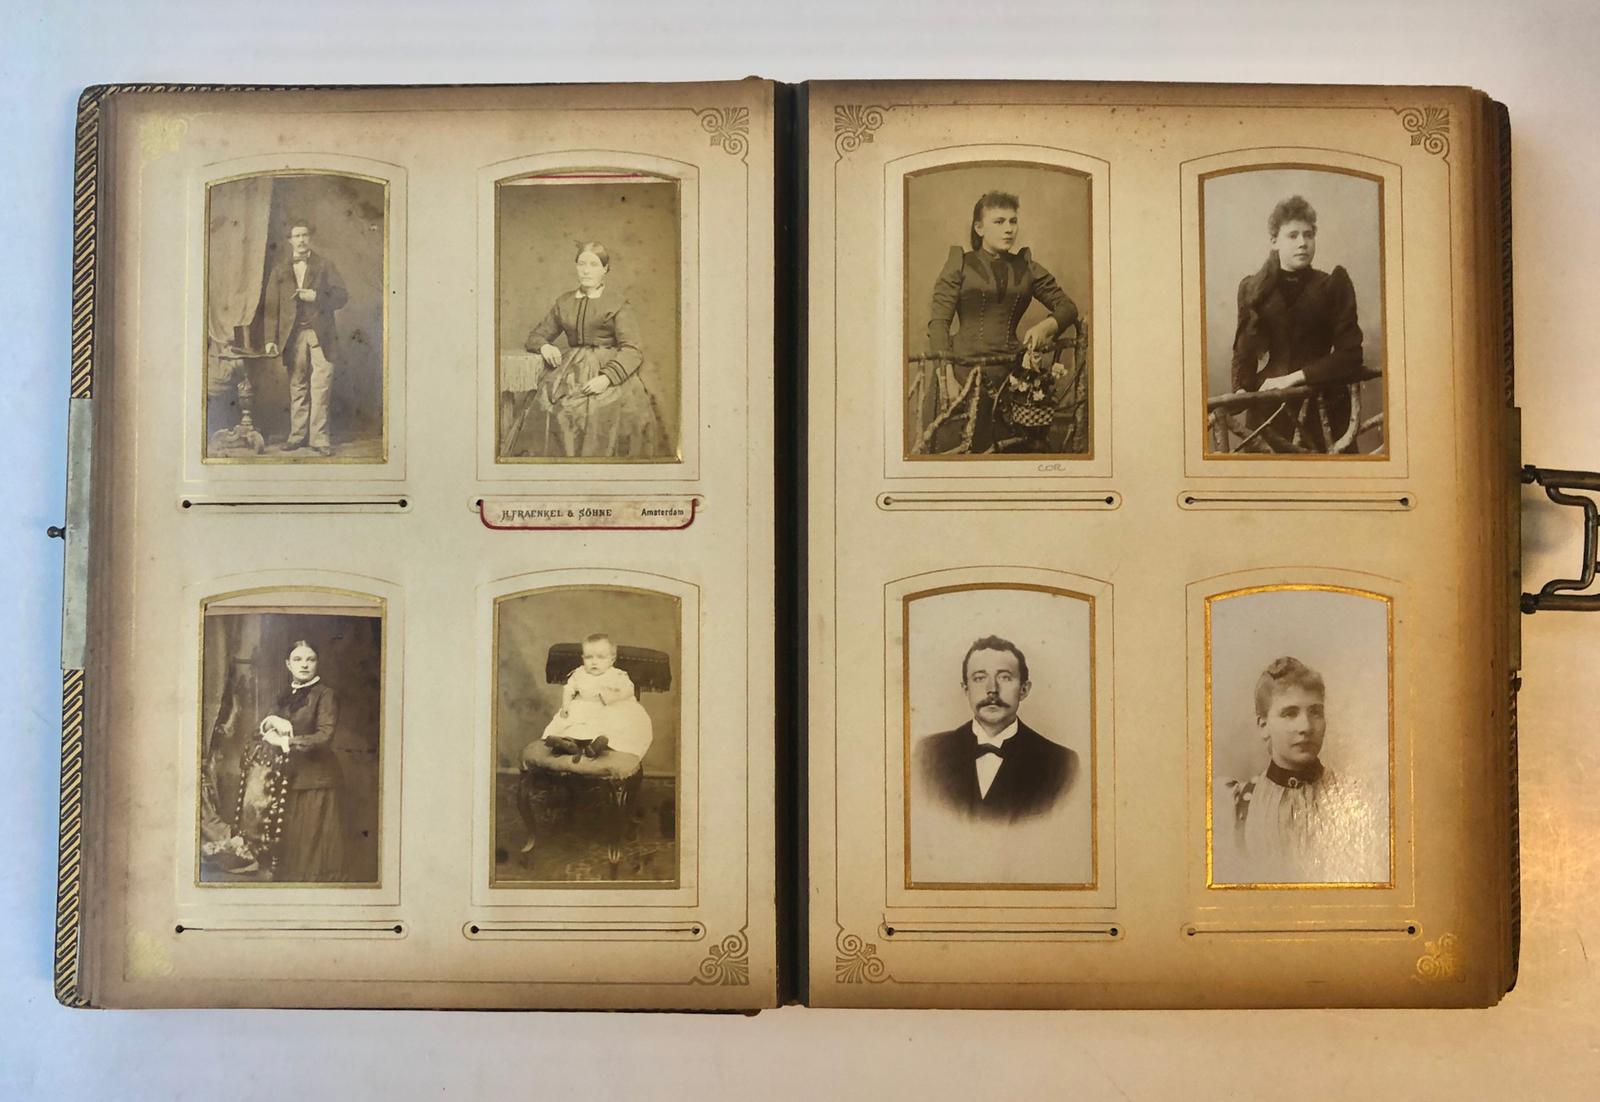  - ZEITZ Fotoalbum met 70 carte-de-visite portretfoto's van leden van de Amsterdamse familie Zeitz, circa 1900. O.a. van Gerardus Zeitz, overleden Amsterdam 1933, gehuwd met A. Ledegang. Met 3 losse foto's en 2 rouwkaarten.